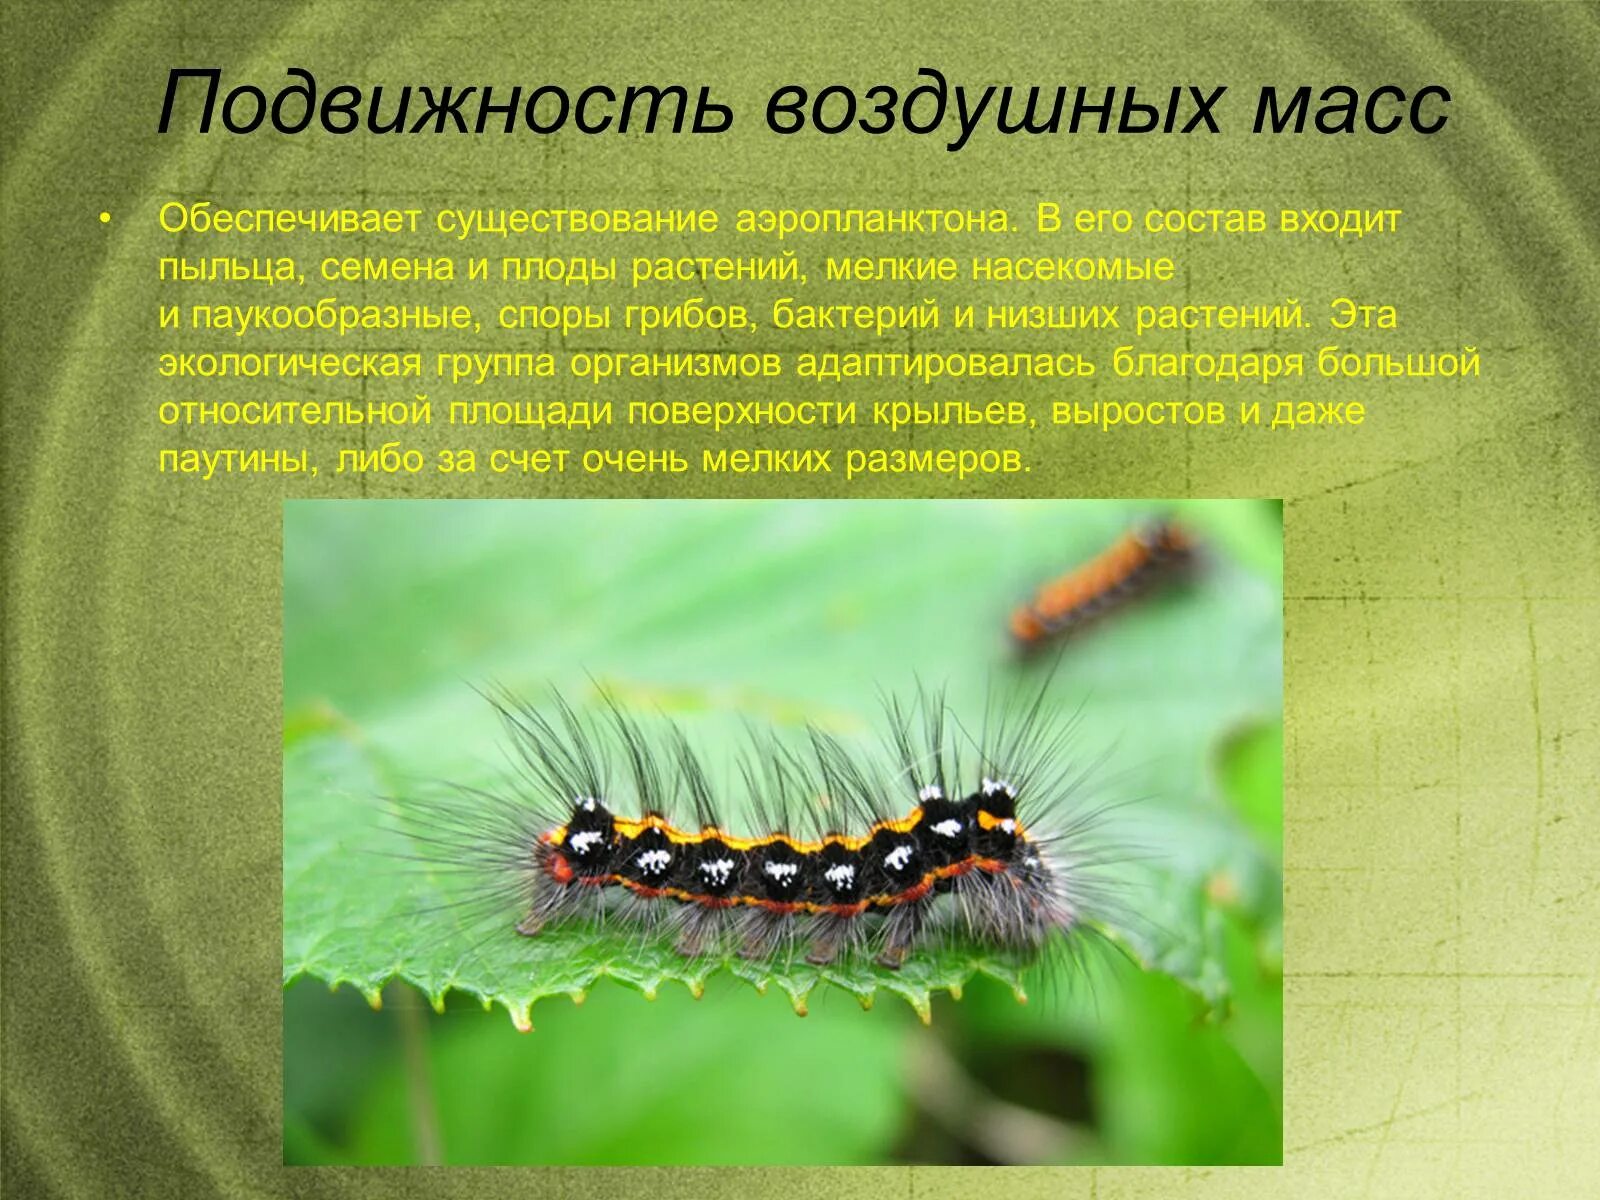 Среда обитания насекомых. Наземно воздушные насекомые. Насекомые в воздушной среде обитания. Наземно-воздушная среда обитания. Подвижность наземно воздушной среды.